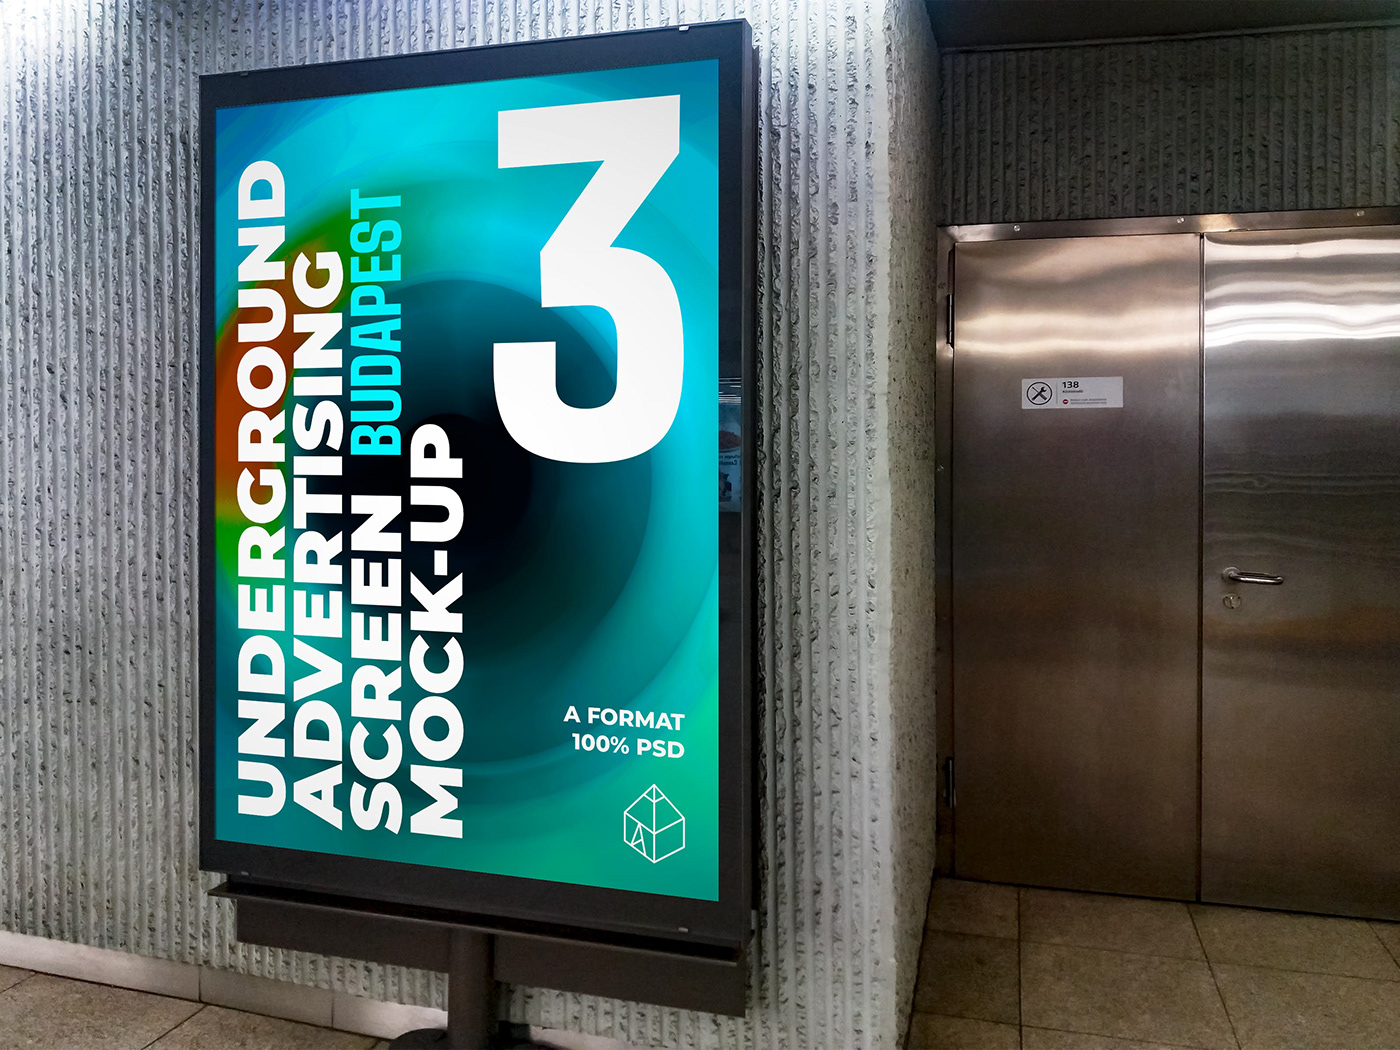 ad Advertising  budapest metro mock-up Mockup STATION train tube underground